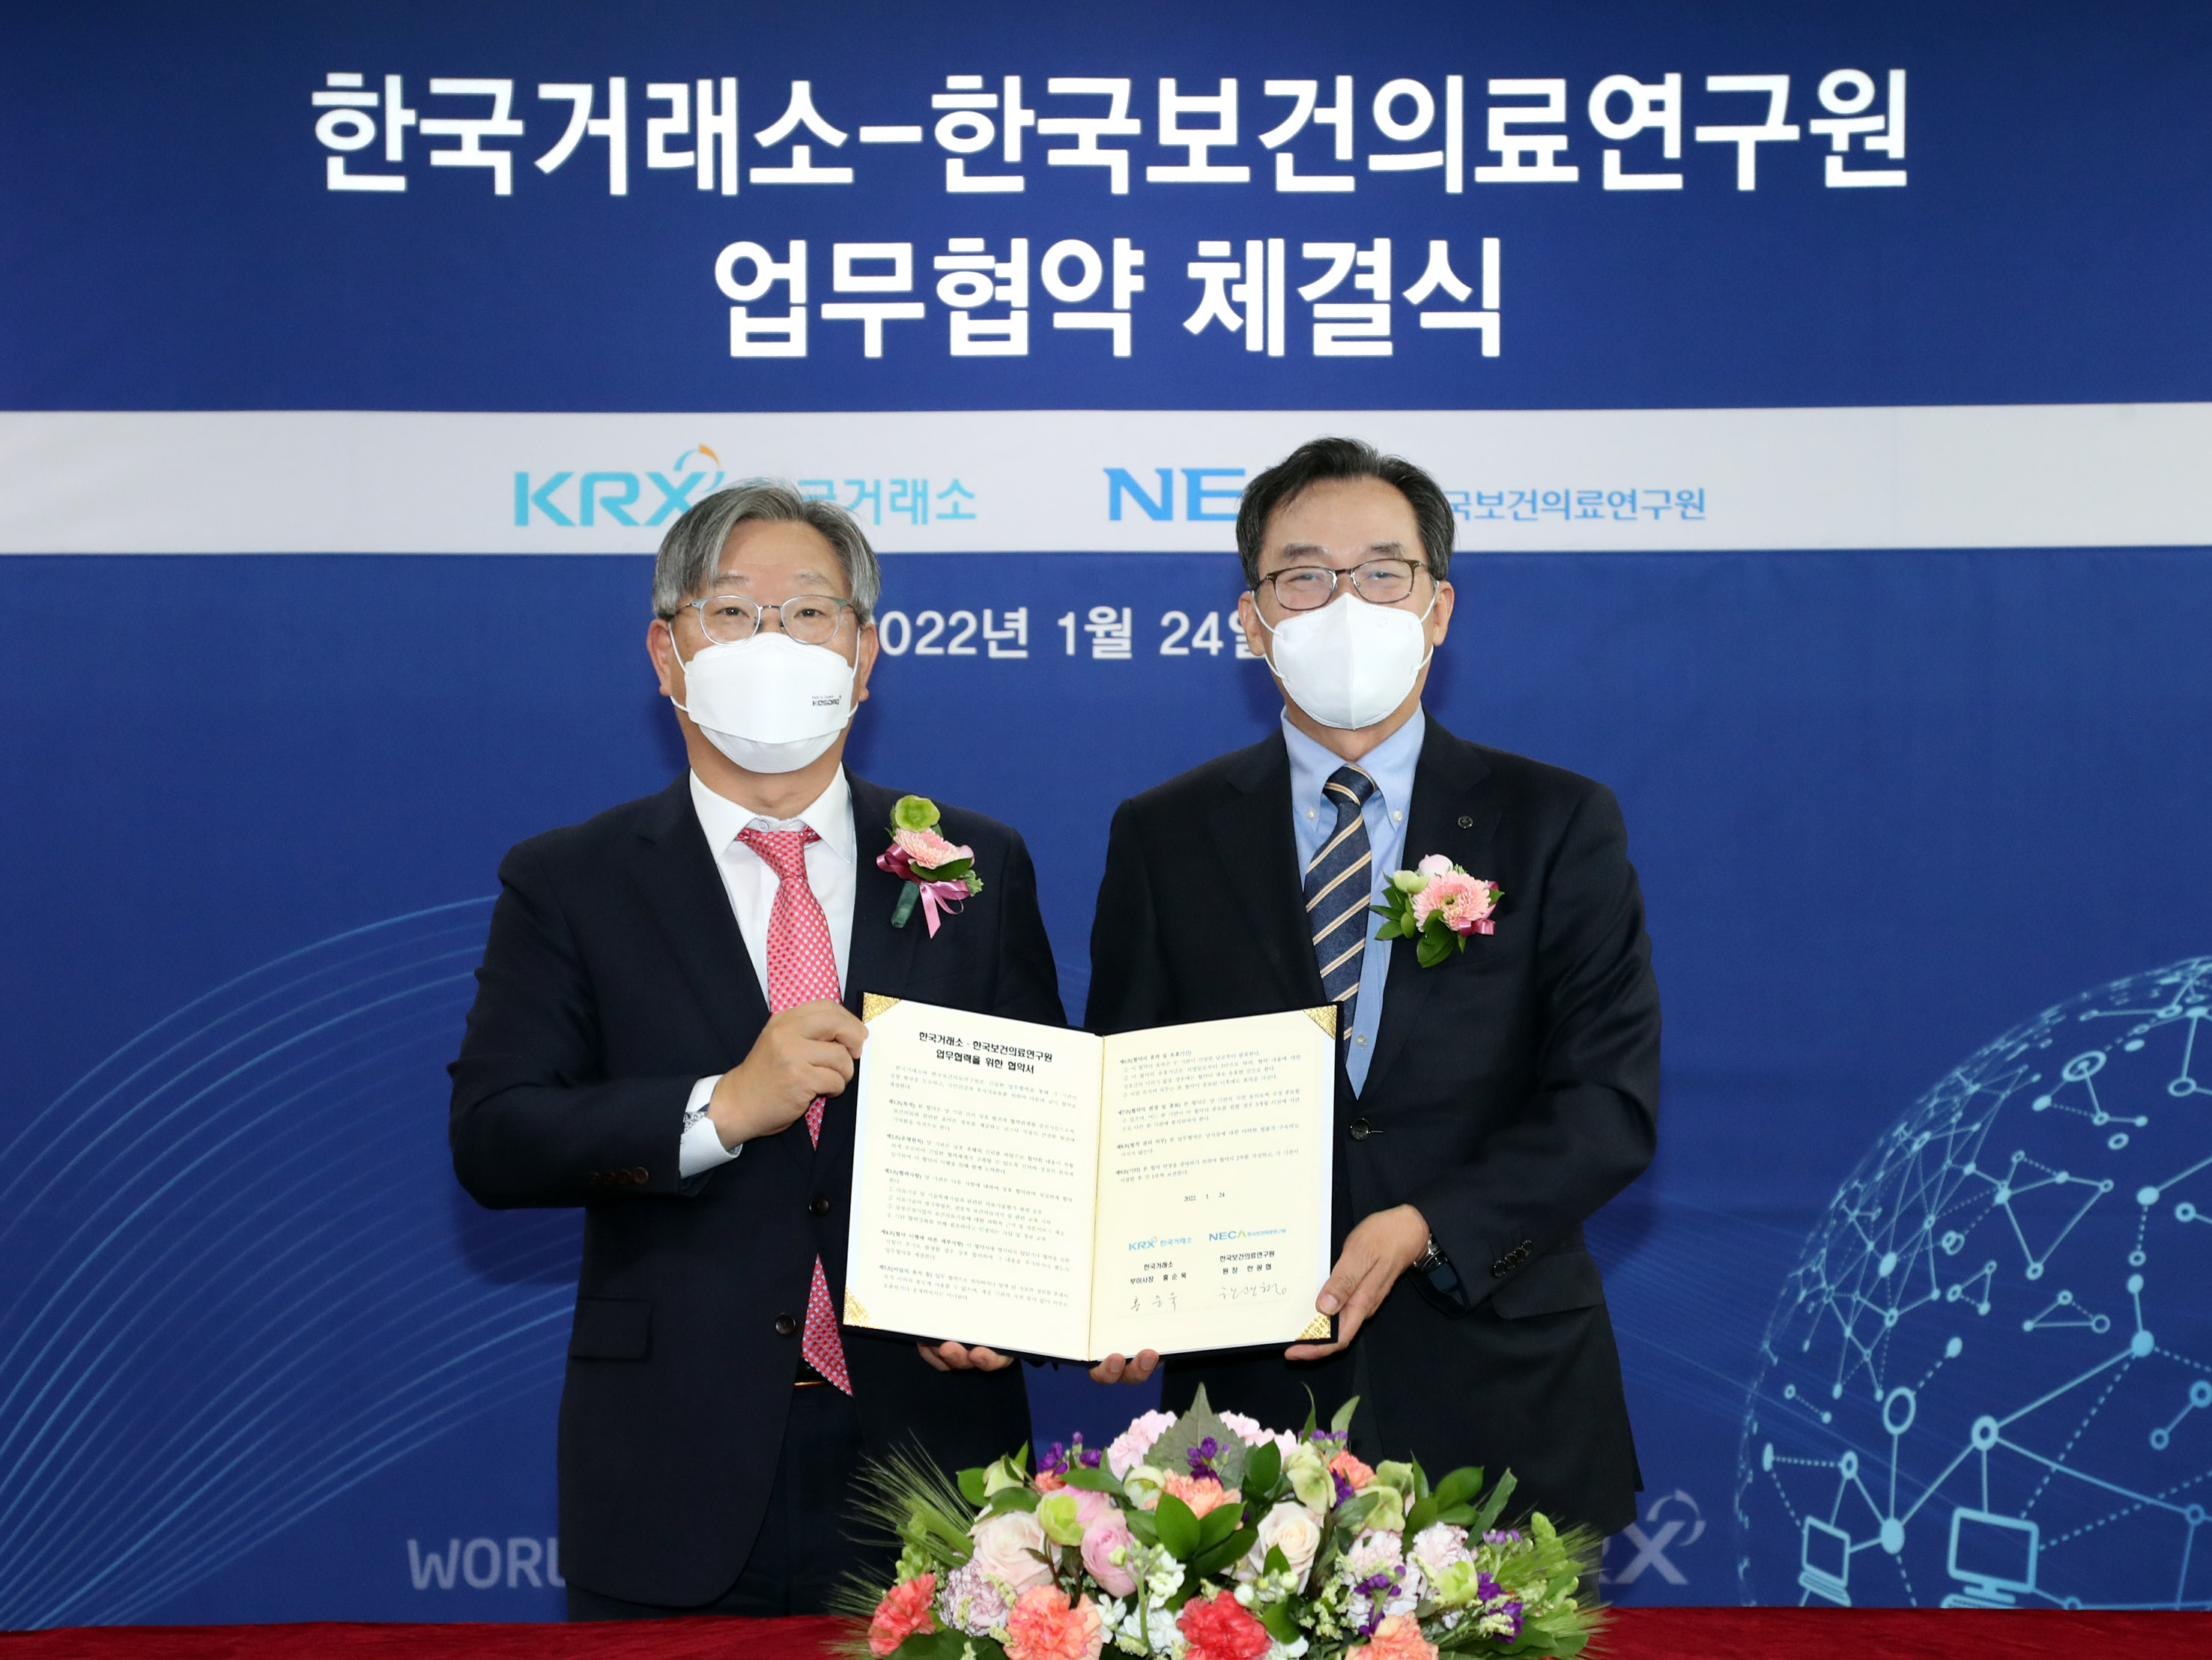 한국보건의료연구원, 한국거래소와  코스닥 시장 발전을 위한 협력 체계 구축